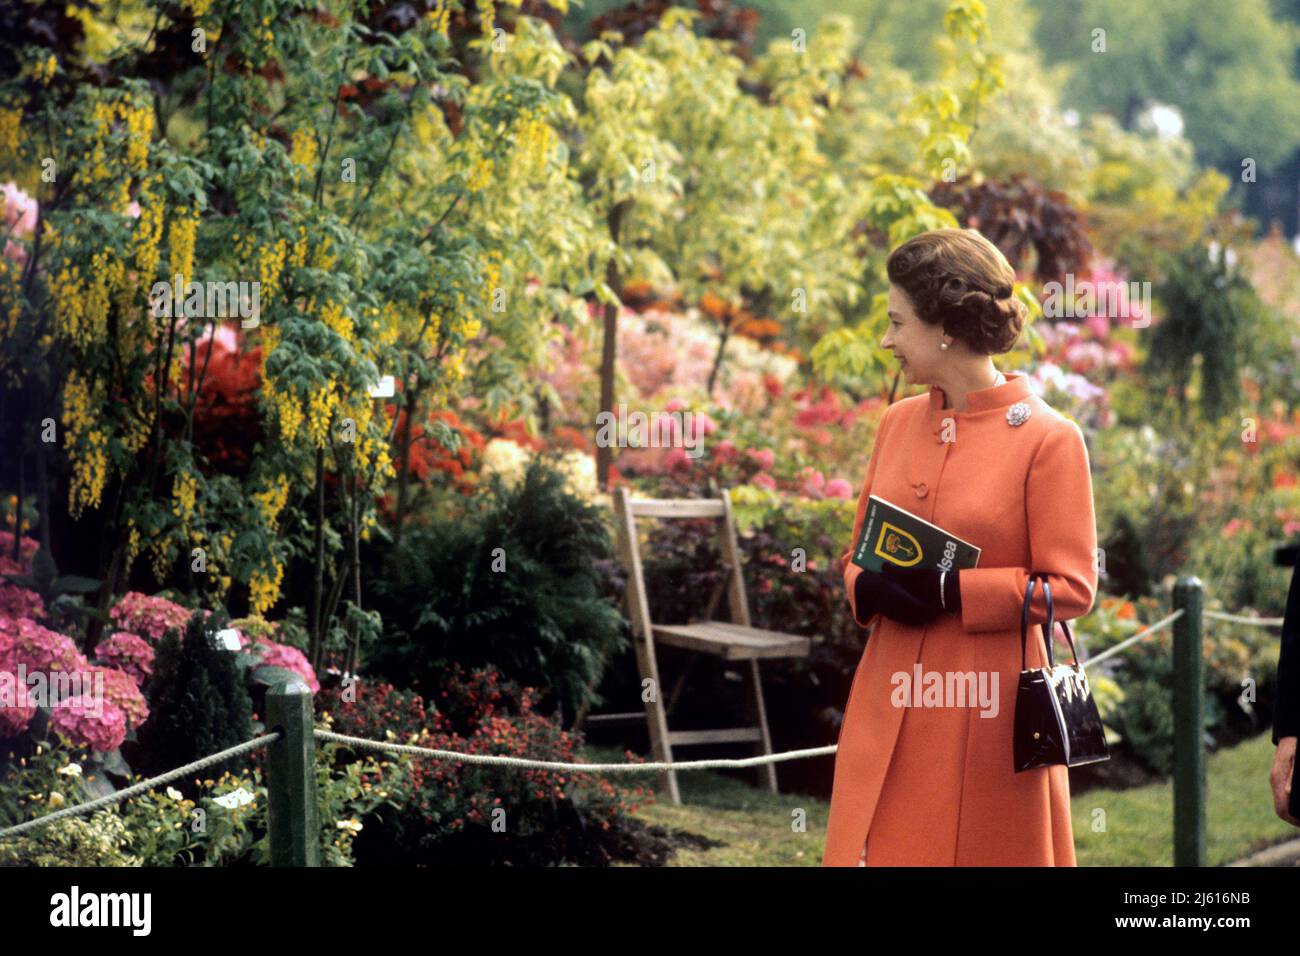 Foto di archivio datata 24/05/71 della regina Elisabetta II durante la sua visita al Chelsea Flower Show, come ritratto scultoreo floreale della regina sarà tra gli omaggi al monarca in occasione del suo Platinum Jubilee al RHS Chelsea Flower Show di quest'anno. Foto Stock